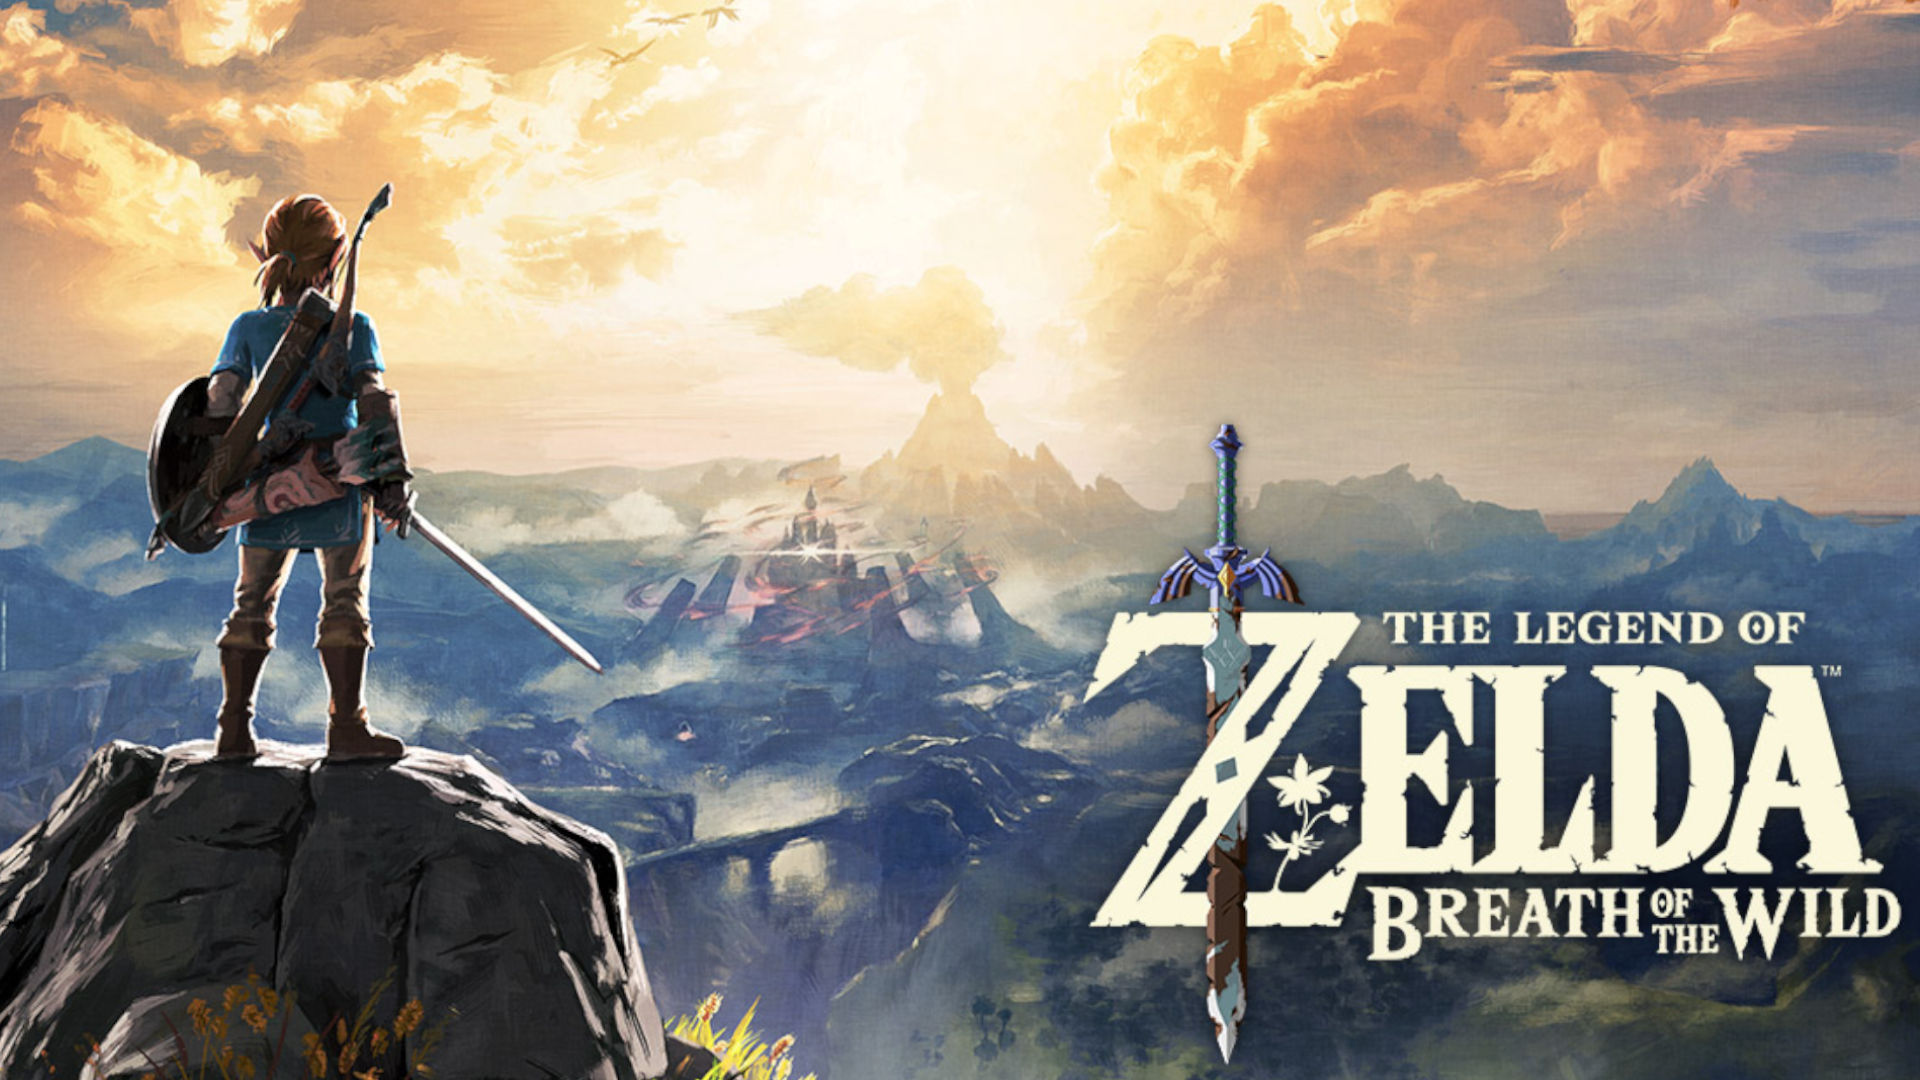 Zelda Breath of the Wild cover art